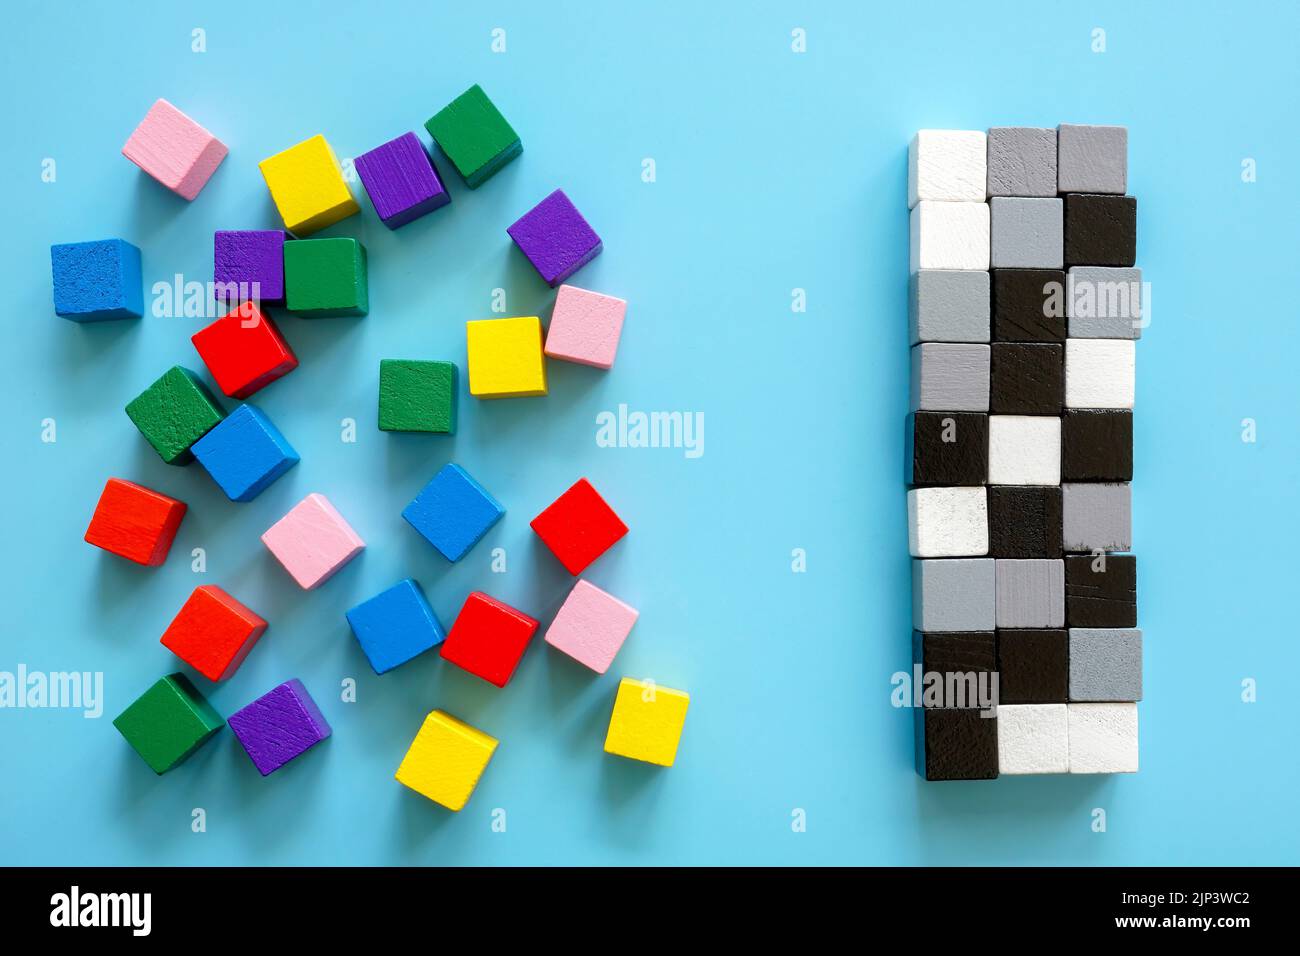 Cubos coloreados y una línea de cubos blancos y negros. Concepto de diversidad e inclusión. Foto de stock